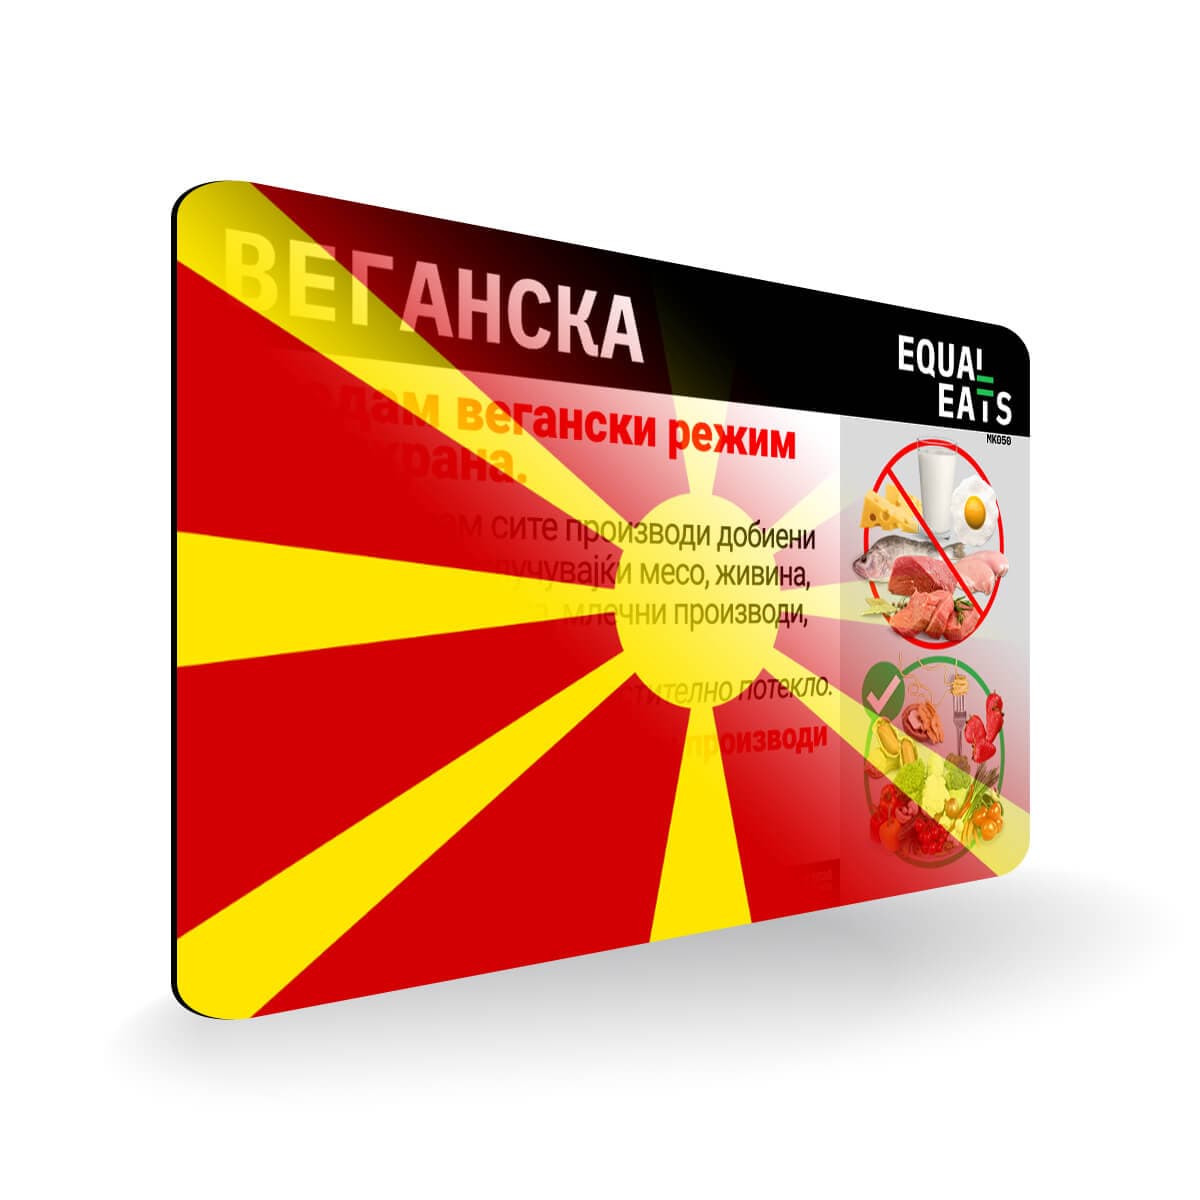 Vegan Diet in Macedonian. Vegan Card for Macedonia